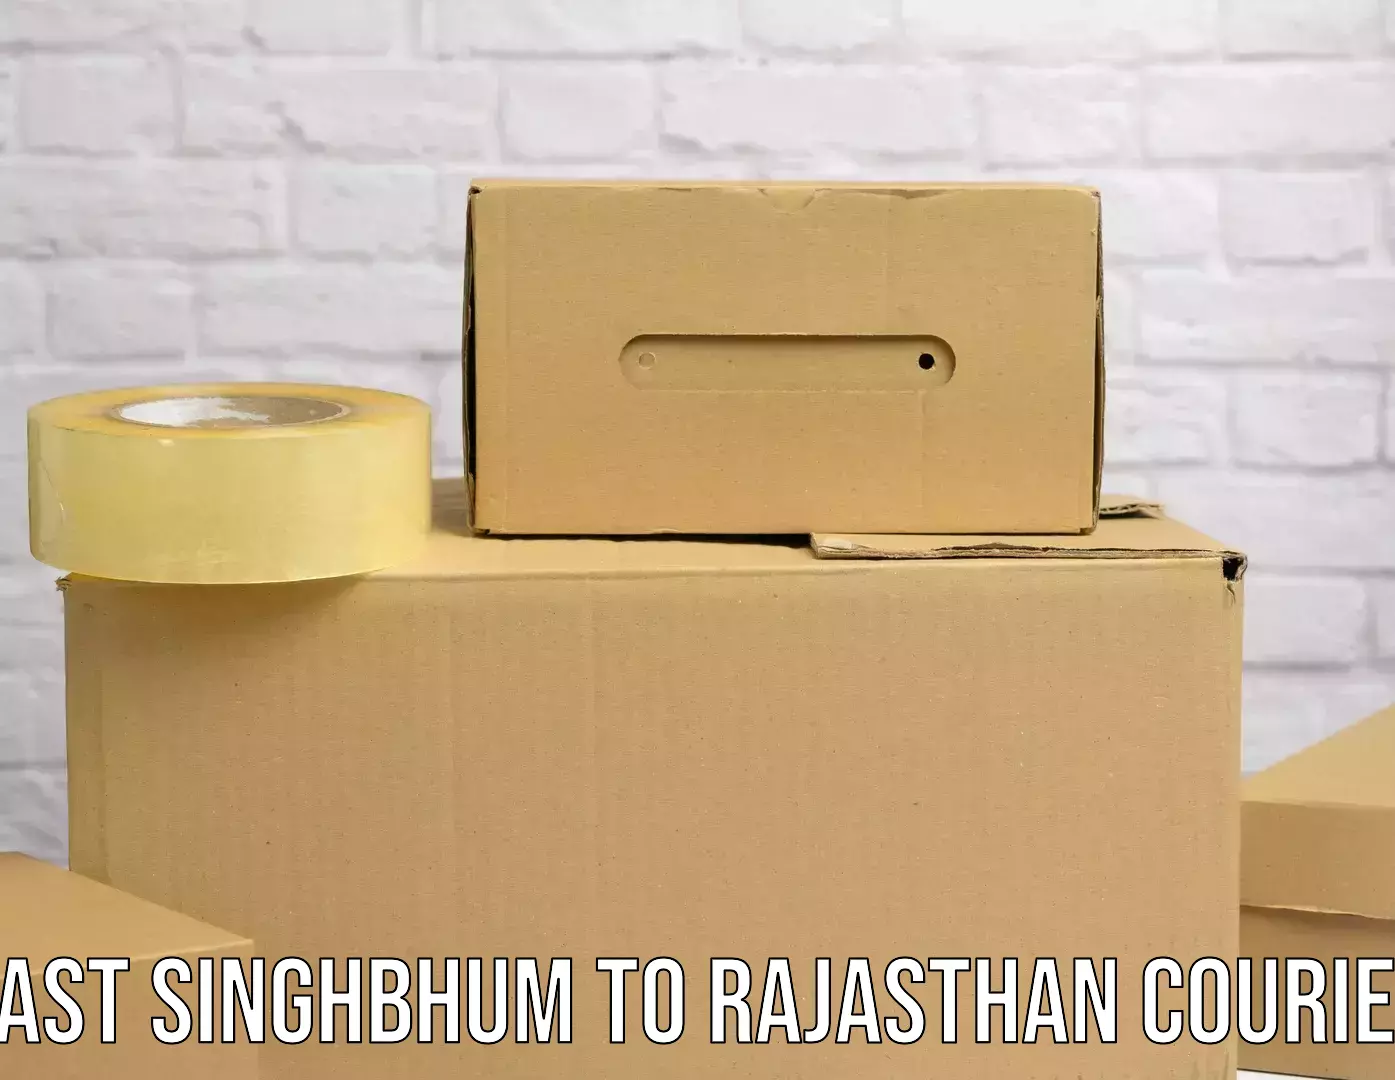 Package tracking in East Singhbhum to NIT Jaipur